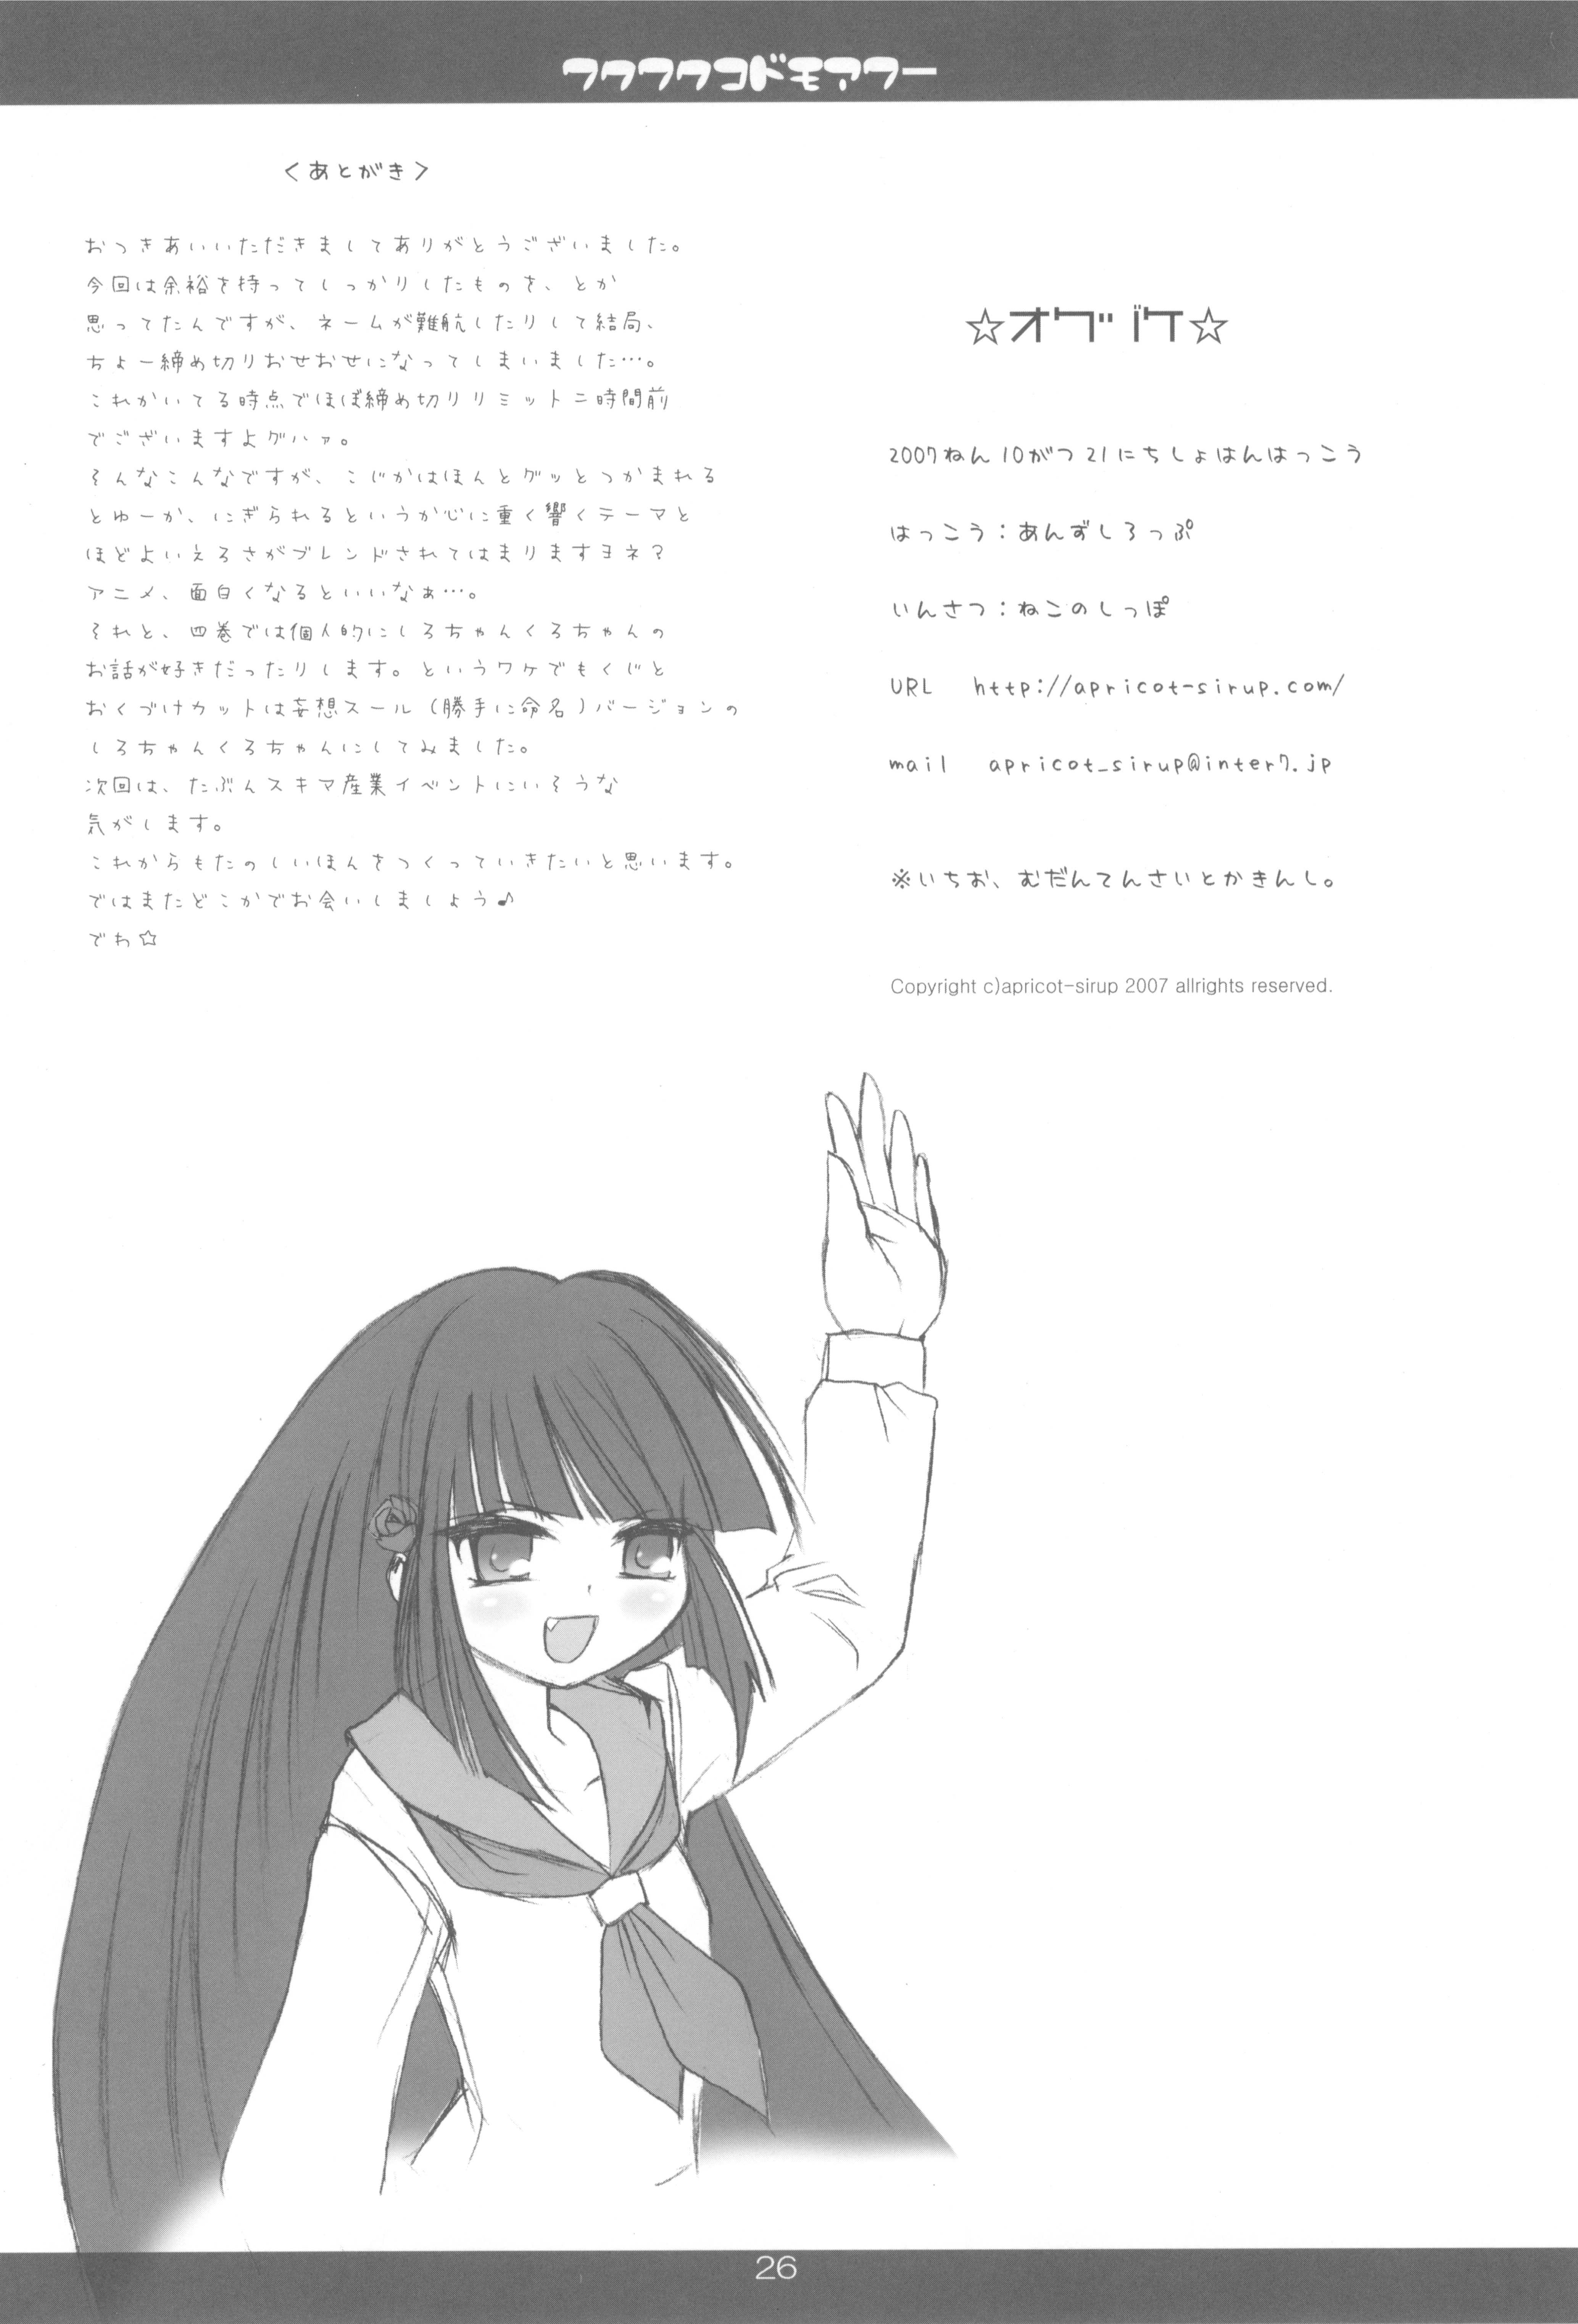 (Keikaku 0x0C) [Apricot Sirup (Hi~mosu)] Wakuwaku Kodomo Hour (Kodomo no Jikan) page 28 full